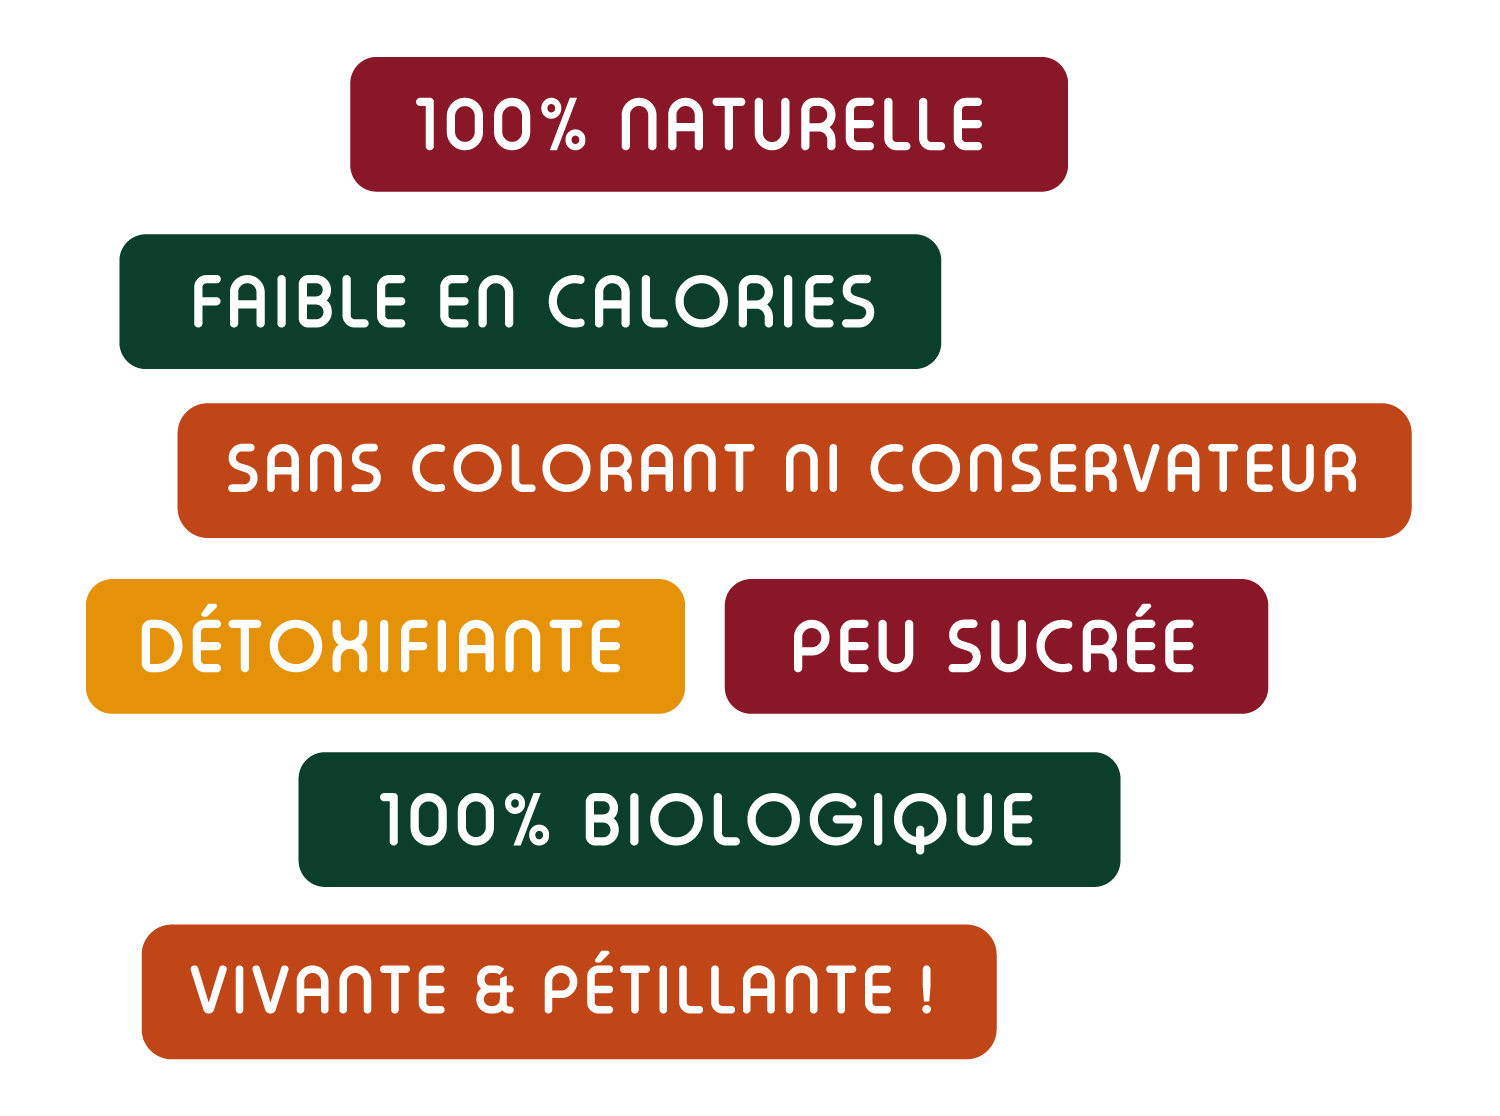 Kéfir & Co - Kéfir de fruits - Hauts-de-France